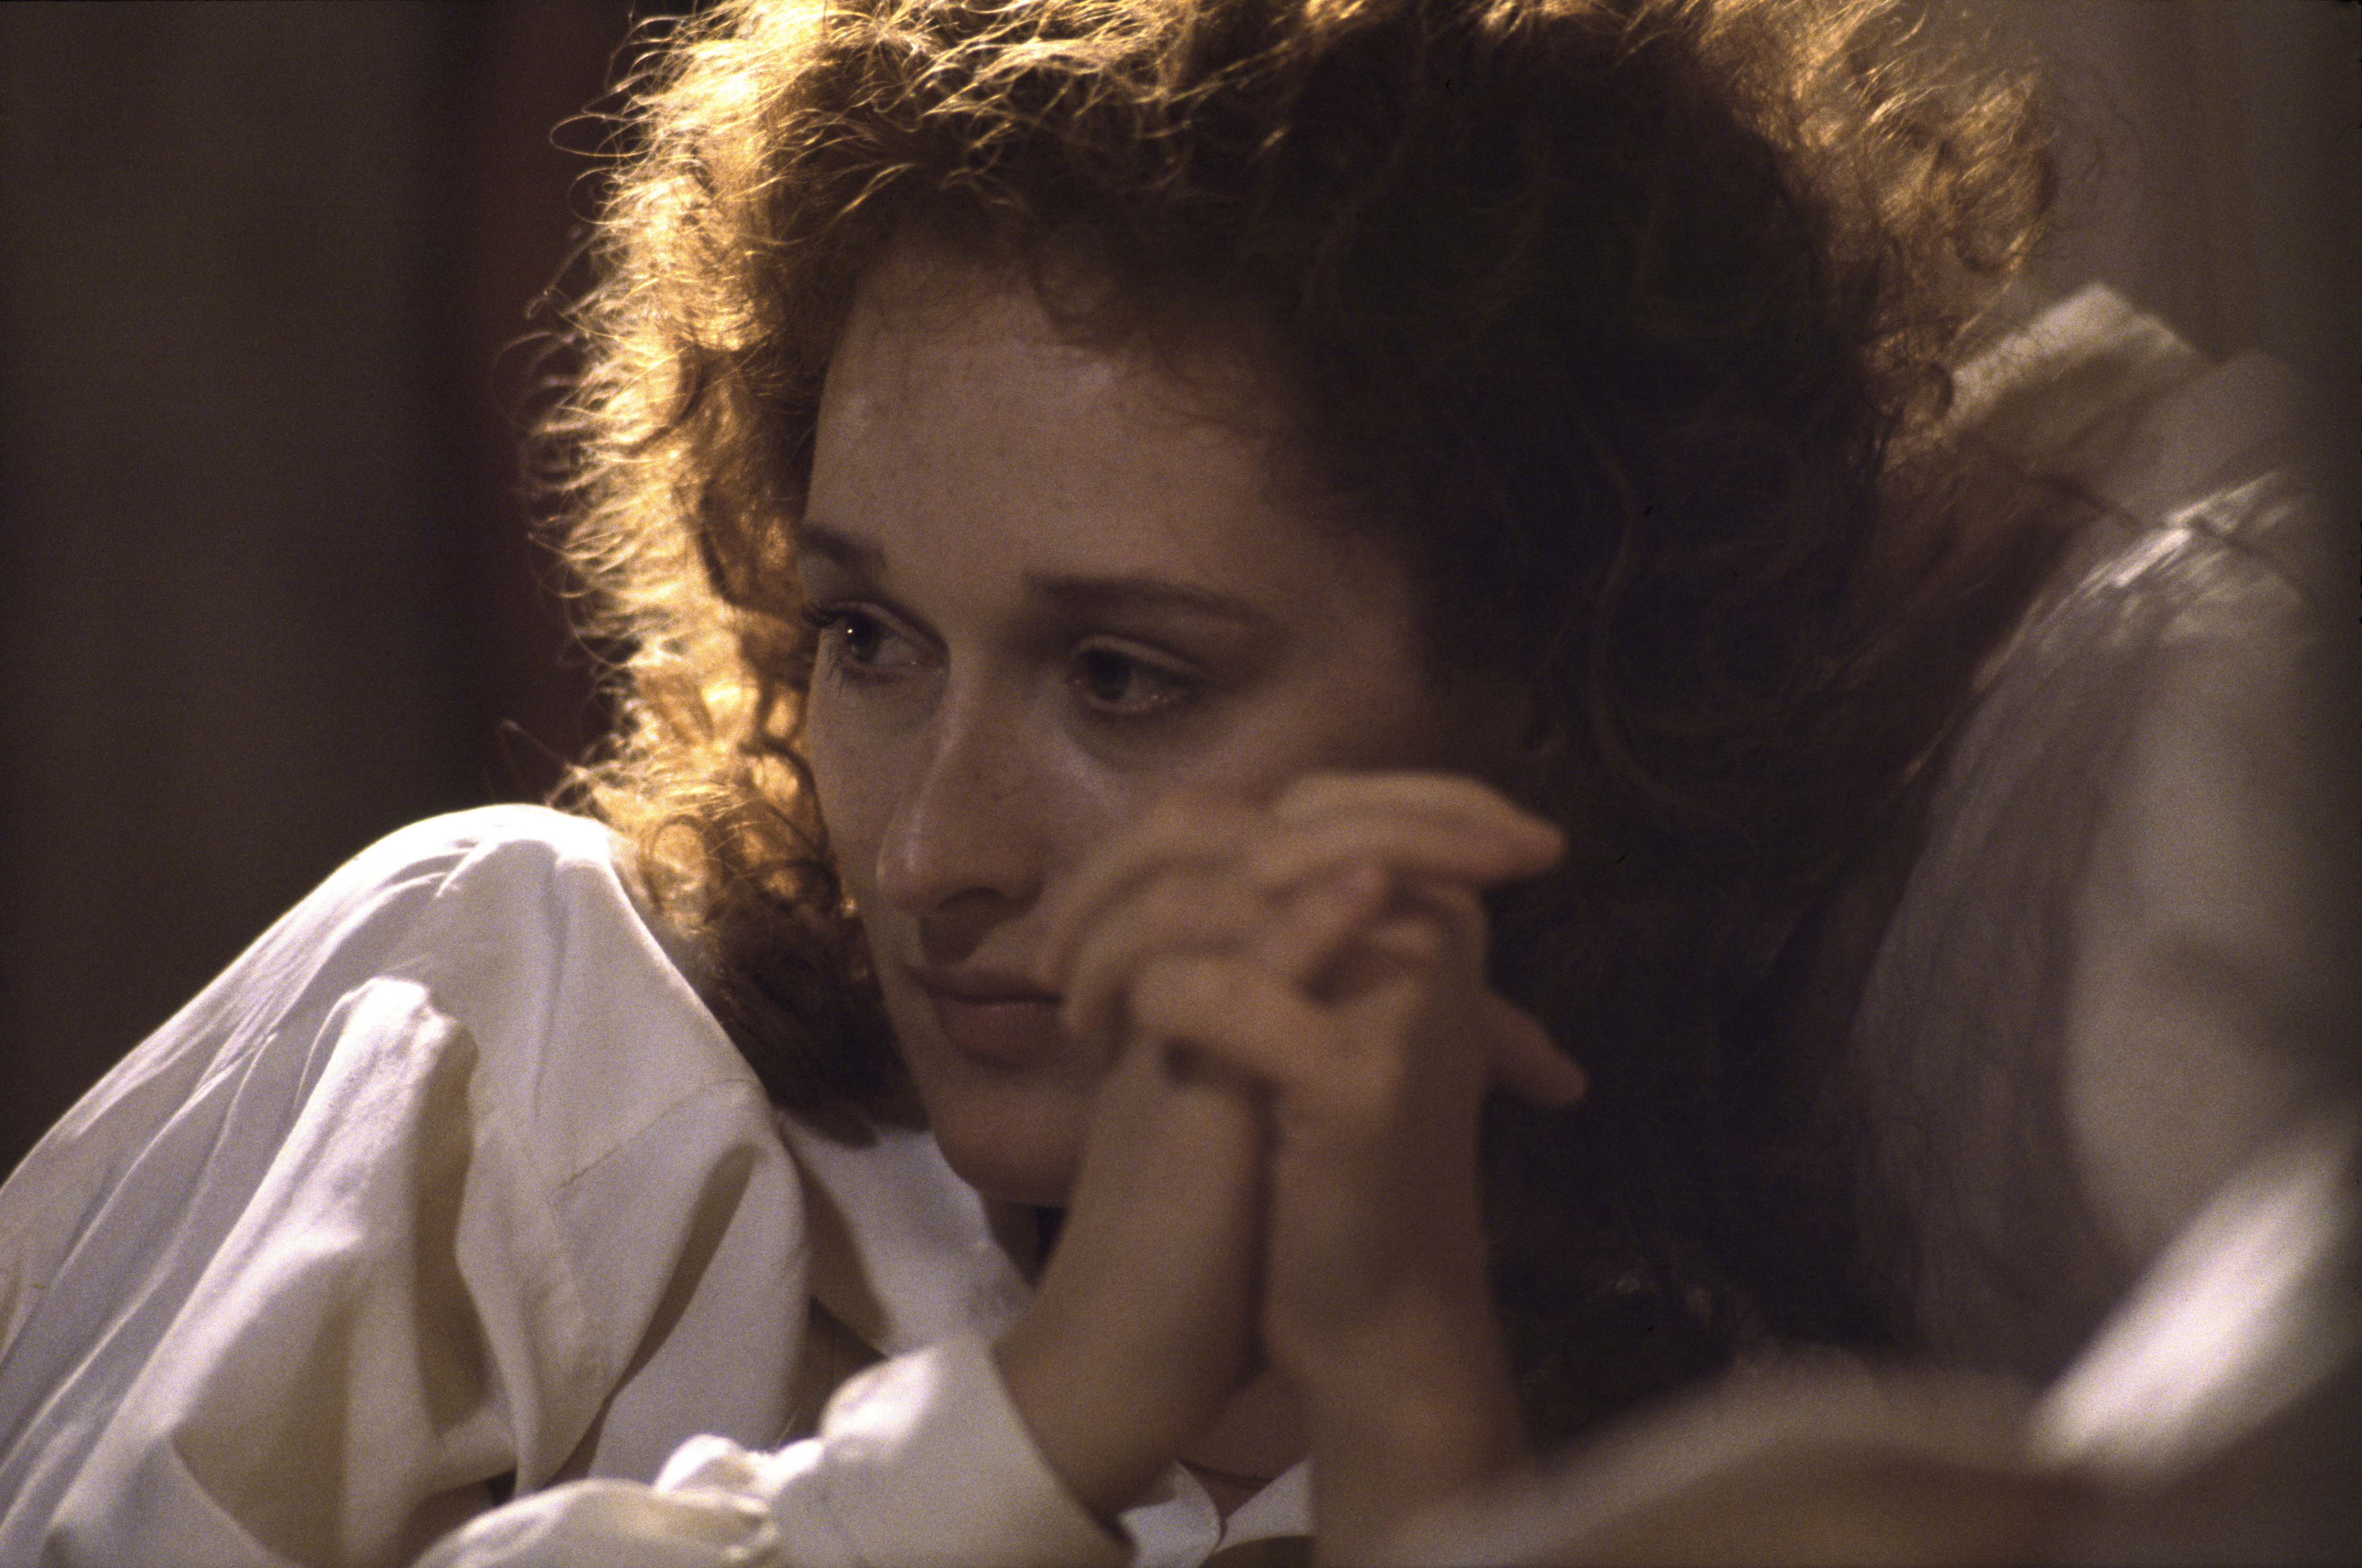 Meryl Streep sur le plateau de tournage du film "The French Lieutenant's Woman", 1980. | Source : Getty Images